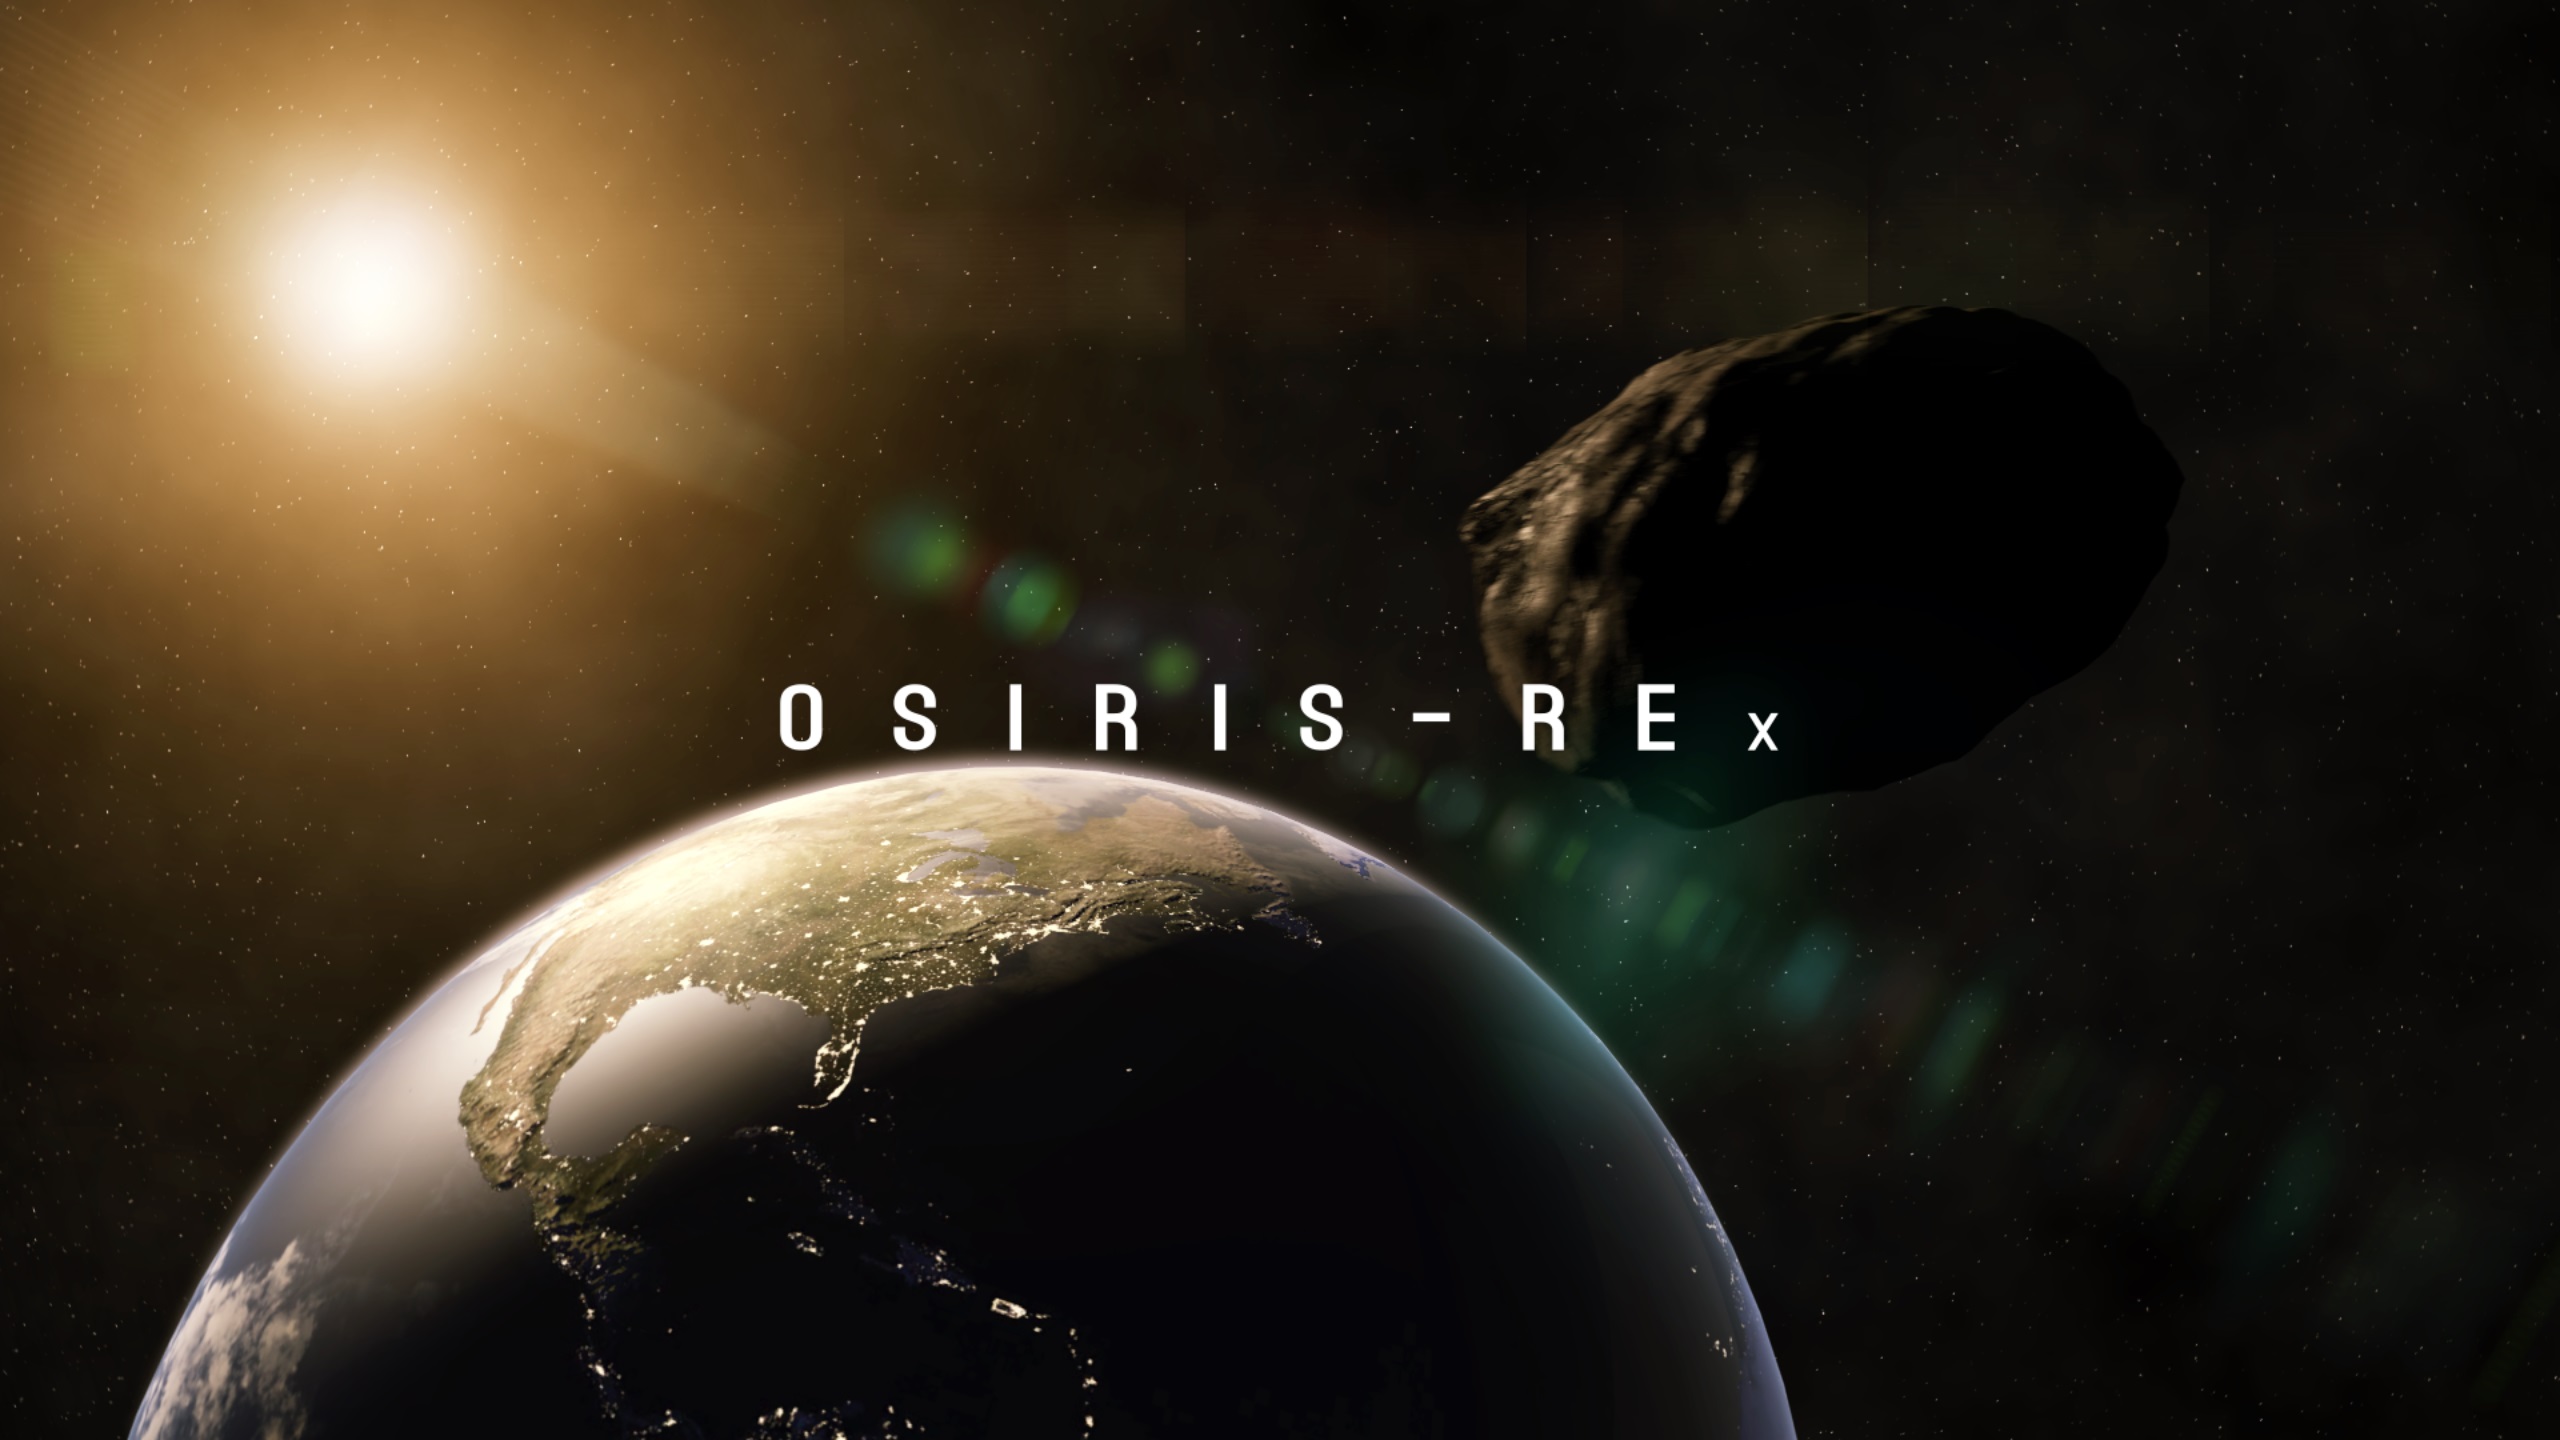 NASA asteroitten numune getiriyor! Tarihi OSIRIS-REx görevi bu gece başlıyor